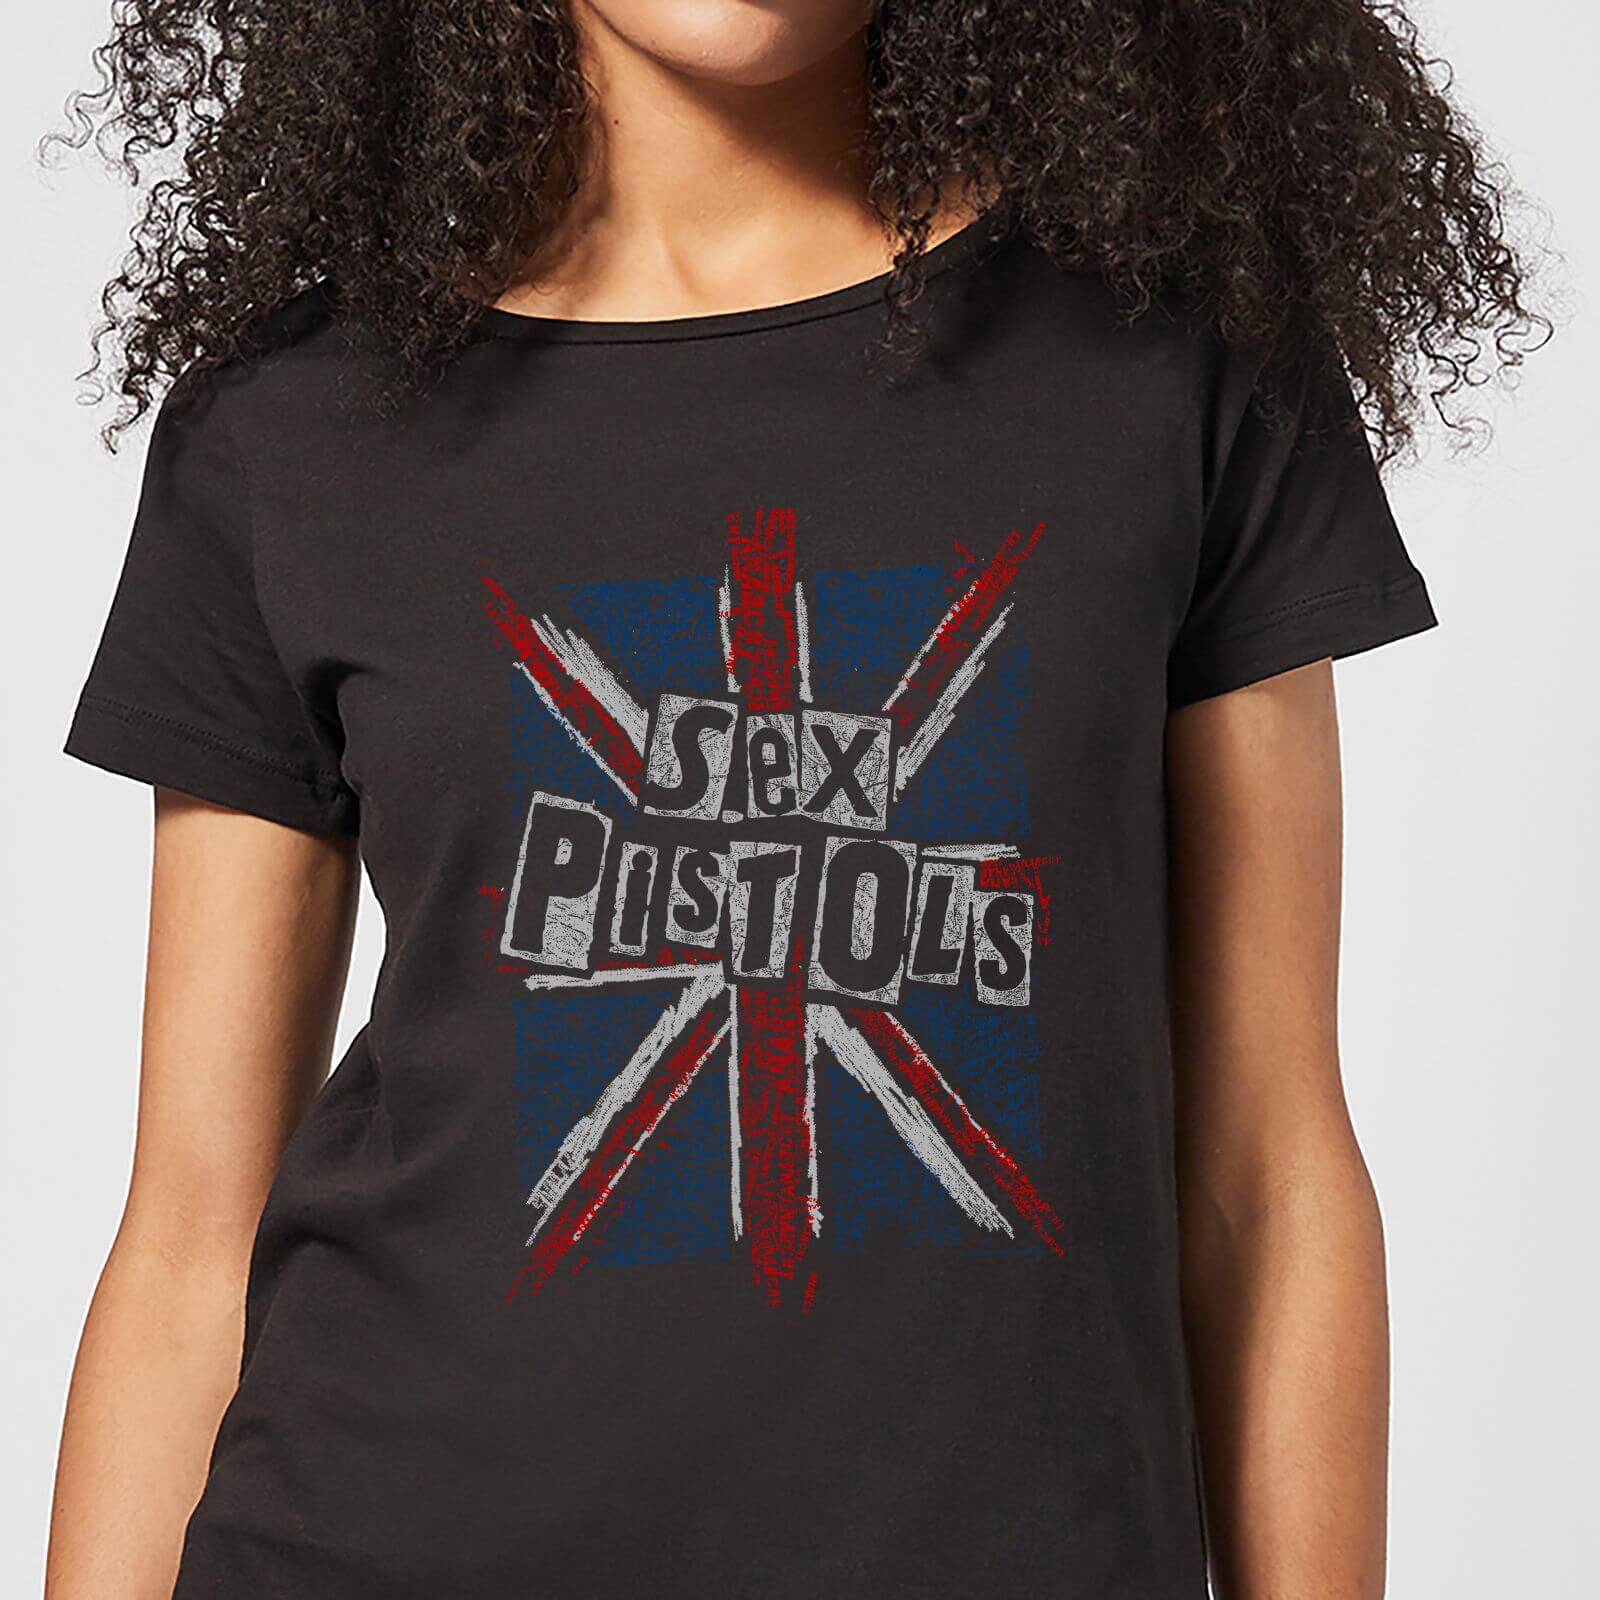 Sex Pistols Union Jack Women%27s T-Shirt - Black - L